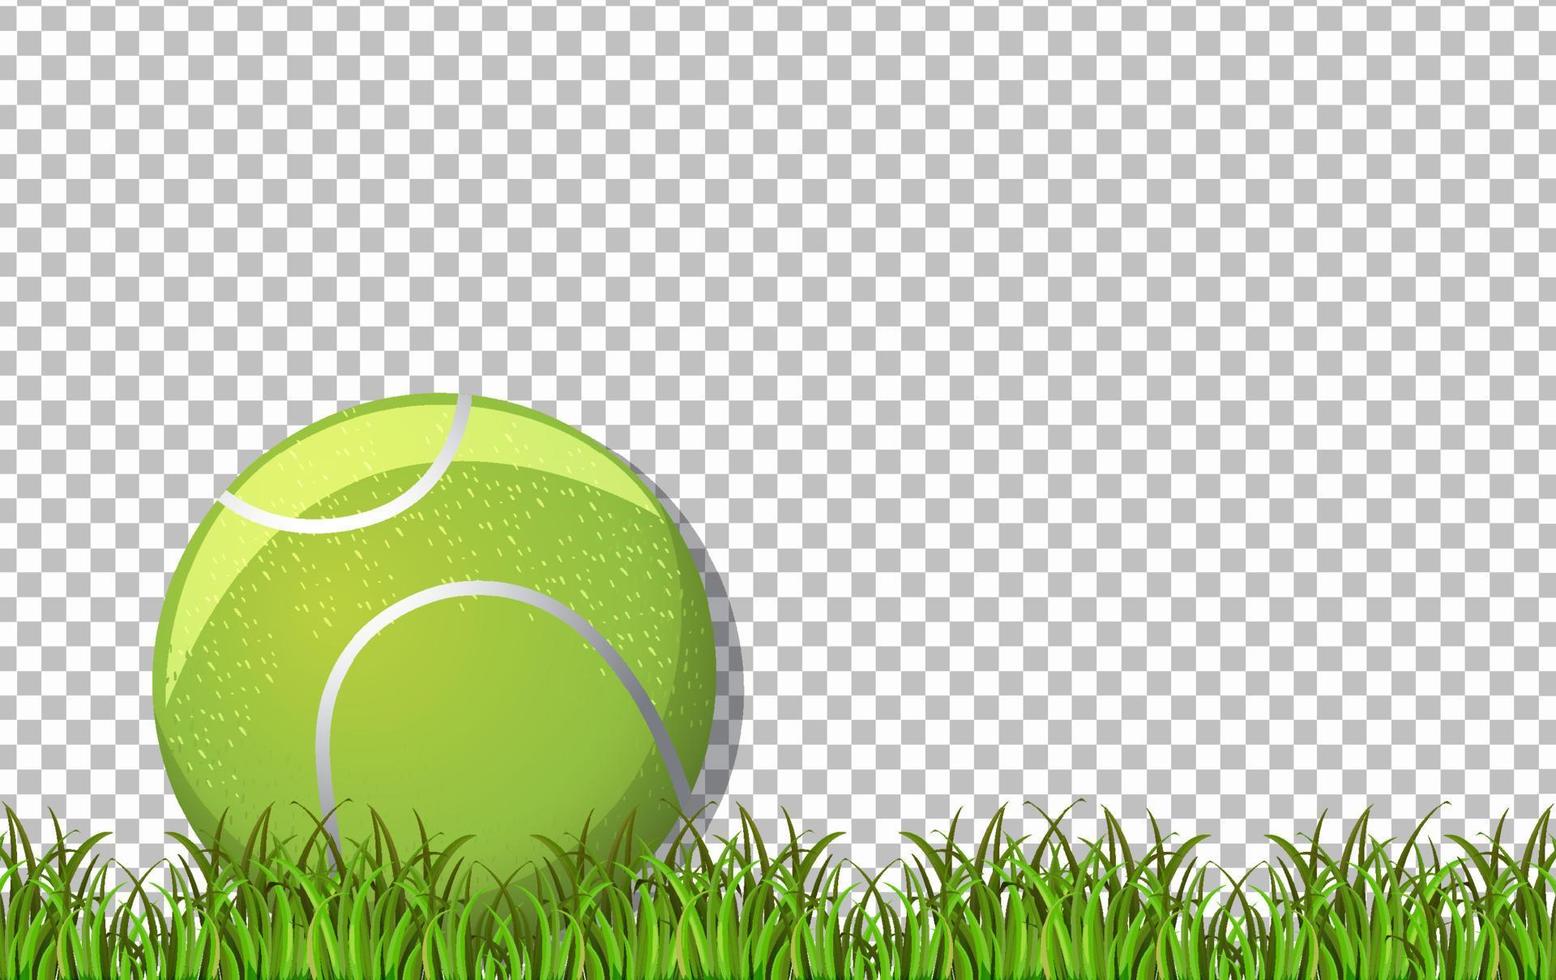 pallina da tennis ed erba sullo sfondo della griglia vettore